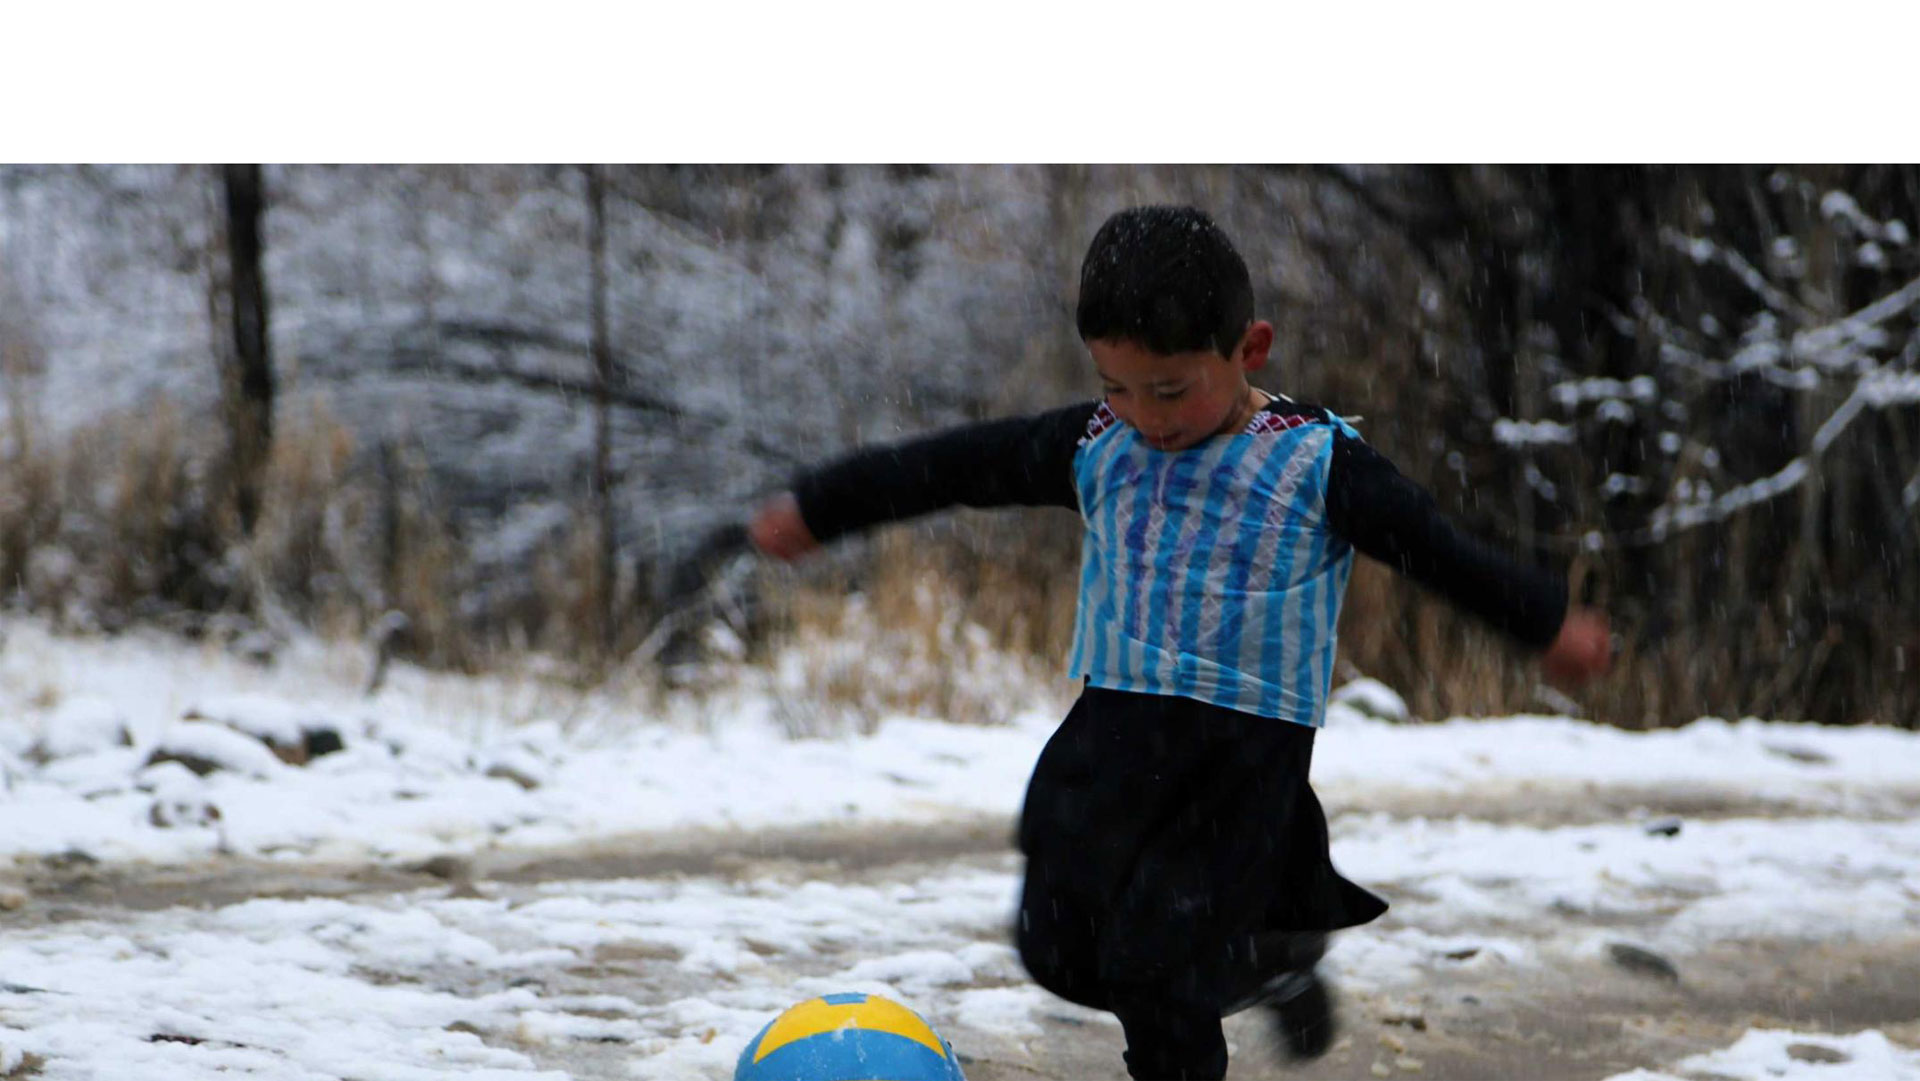 Murtaza, el pequeño afortunado, vive en Afganistán y expresó que deseaba conocer a su ídolo y poder jugar fútbol con él, hasta hizo su propia camisa